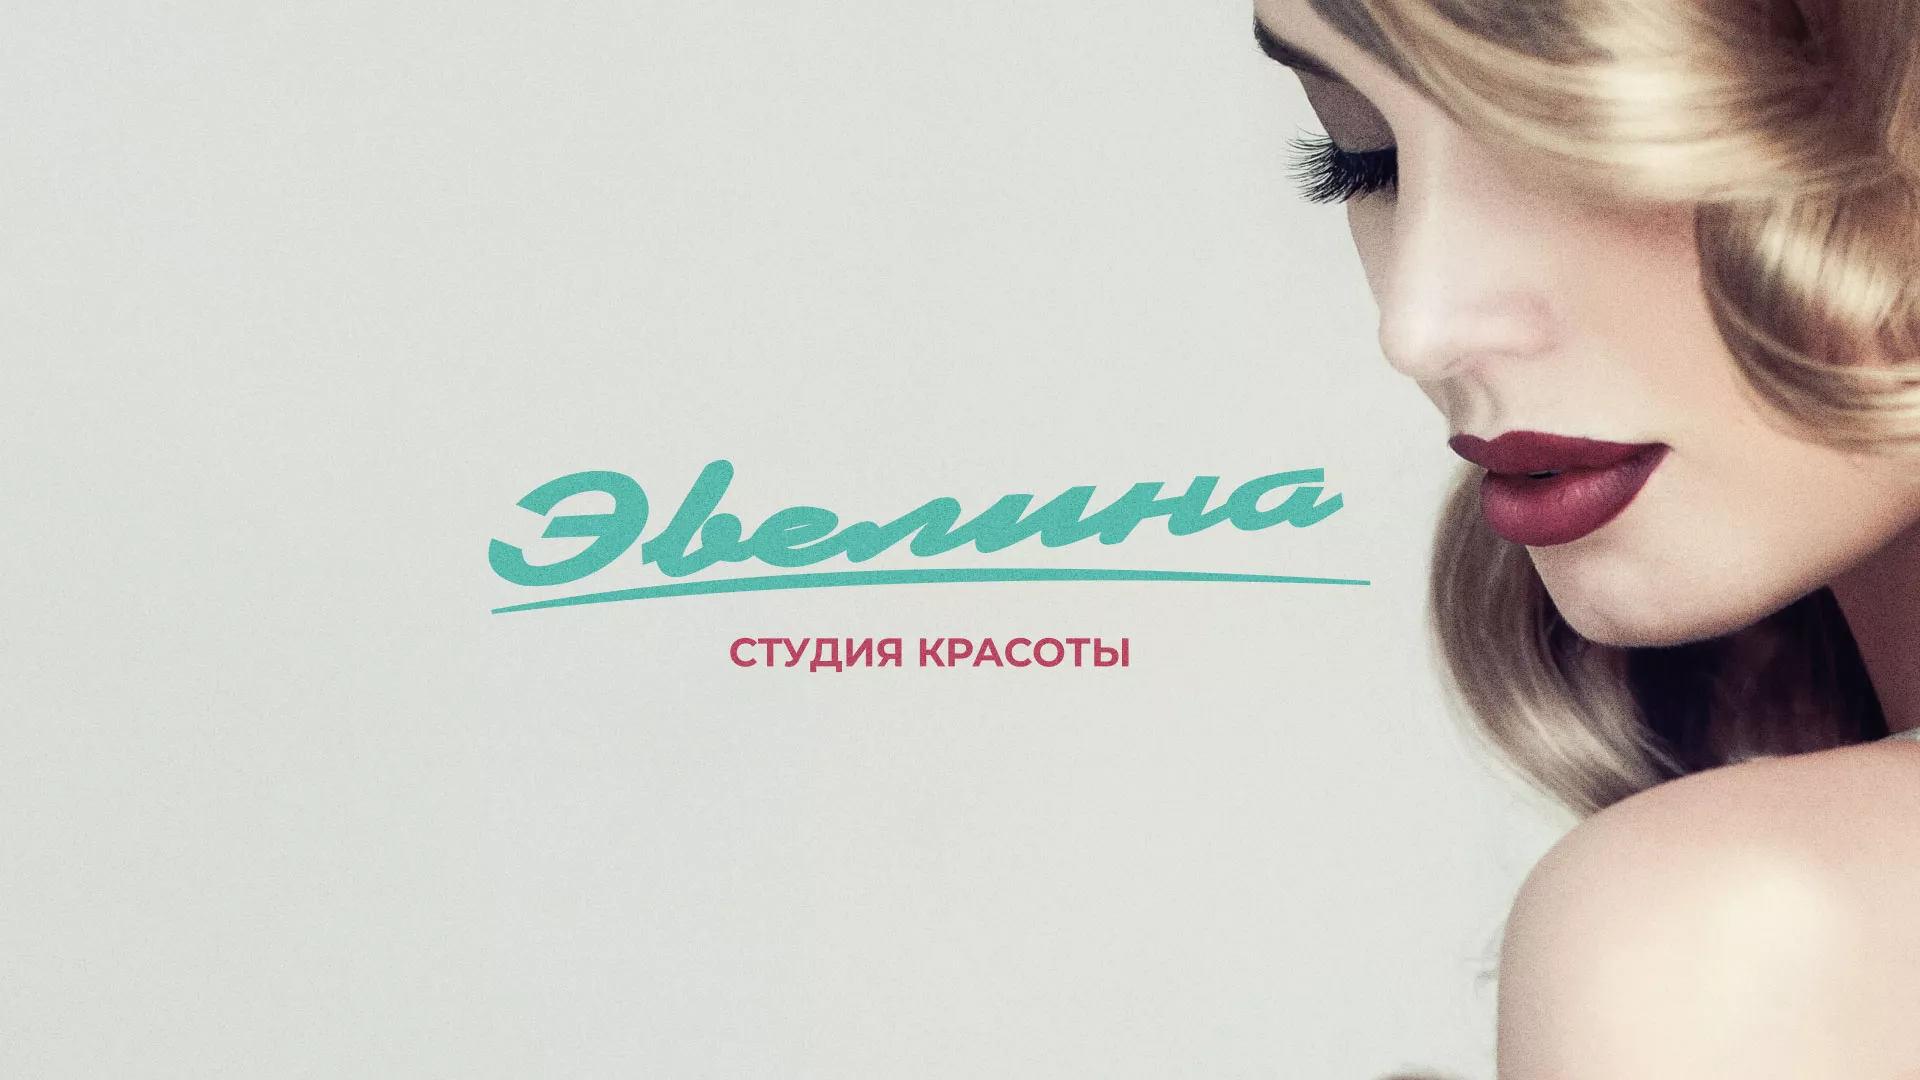 Разработка сайта для салона красоты «Эвелина» в Архангельске